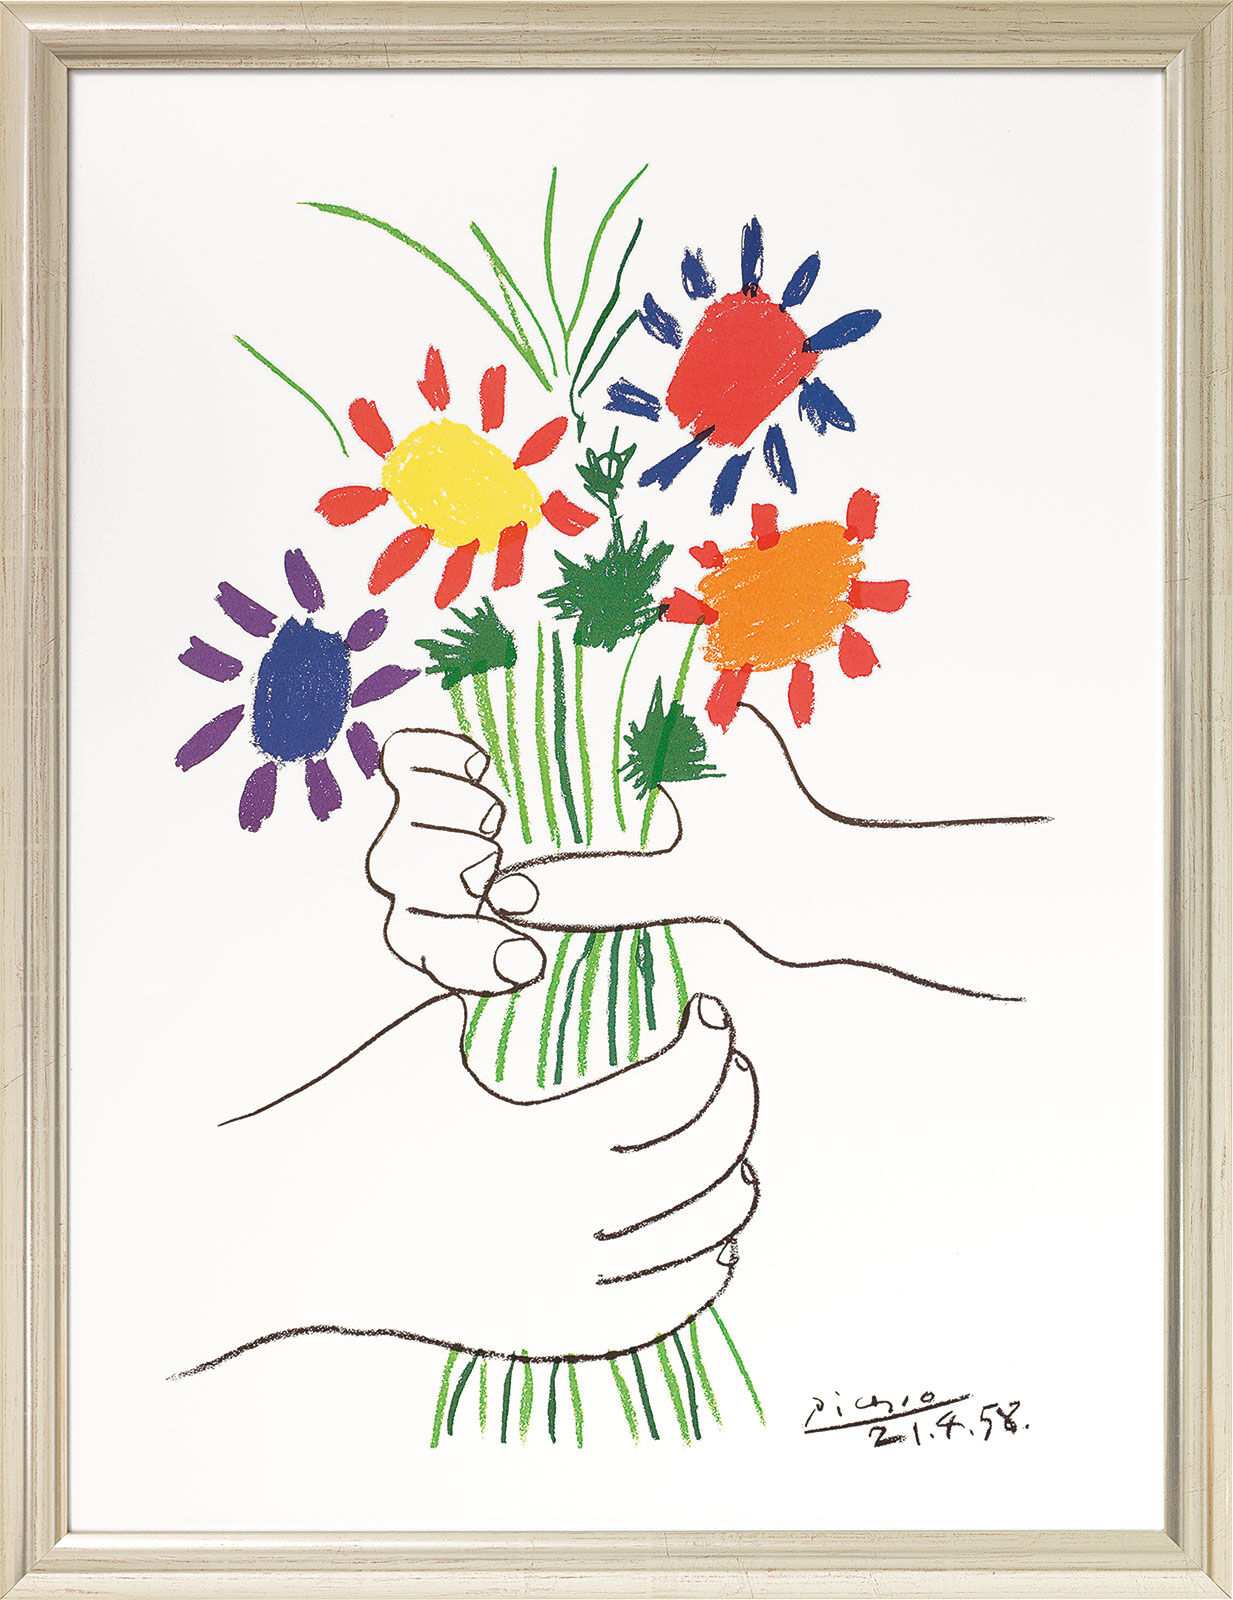 Gemälde "Hände mit Blumenstrauß" (1958), gerahmt - Pablo Picasso